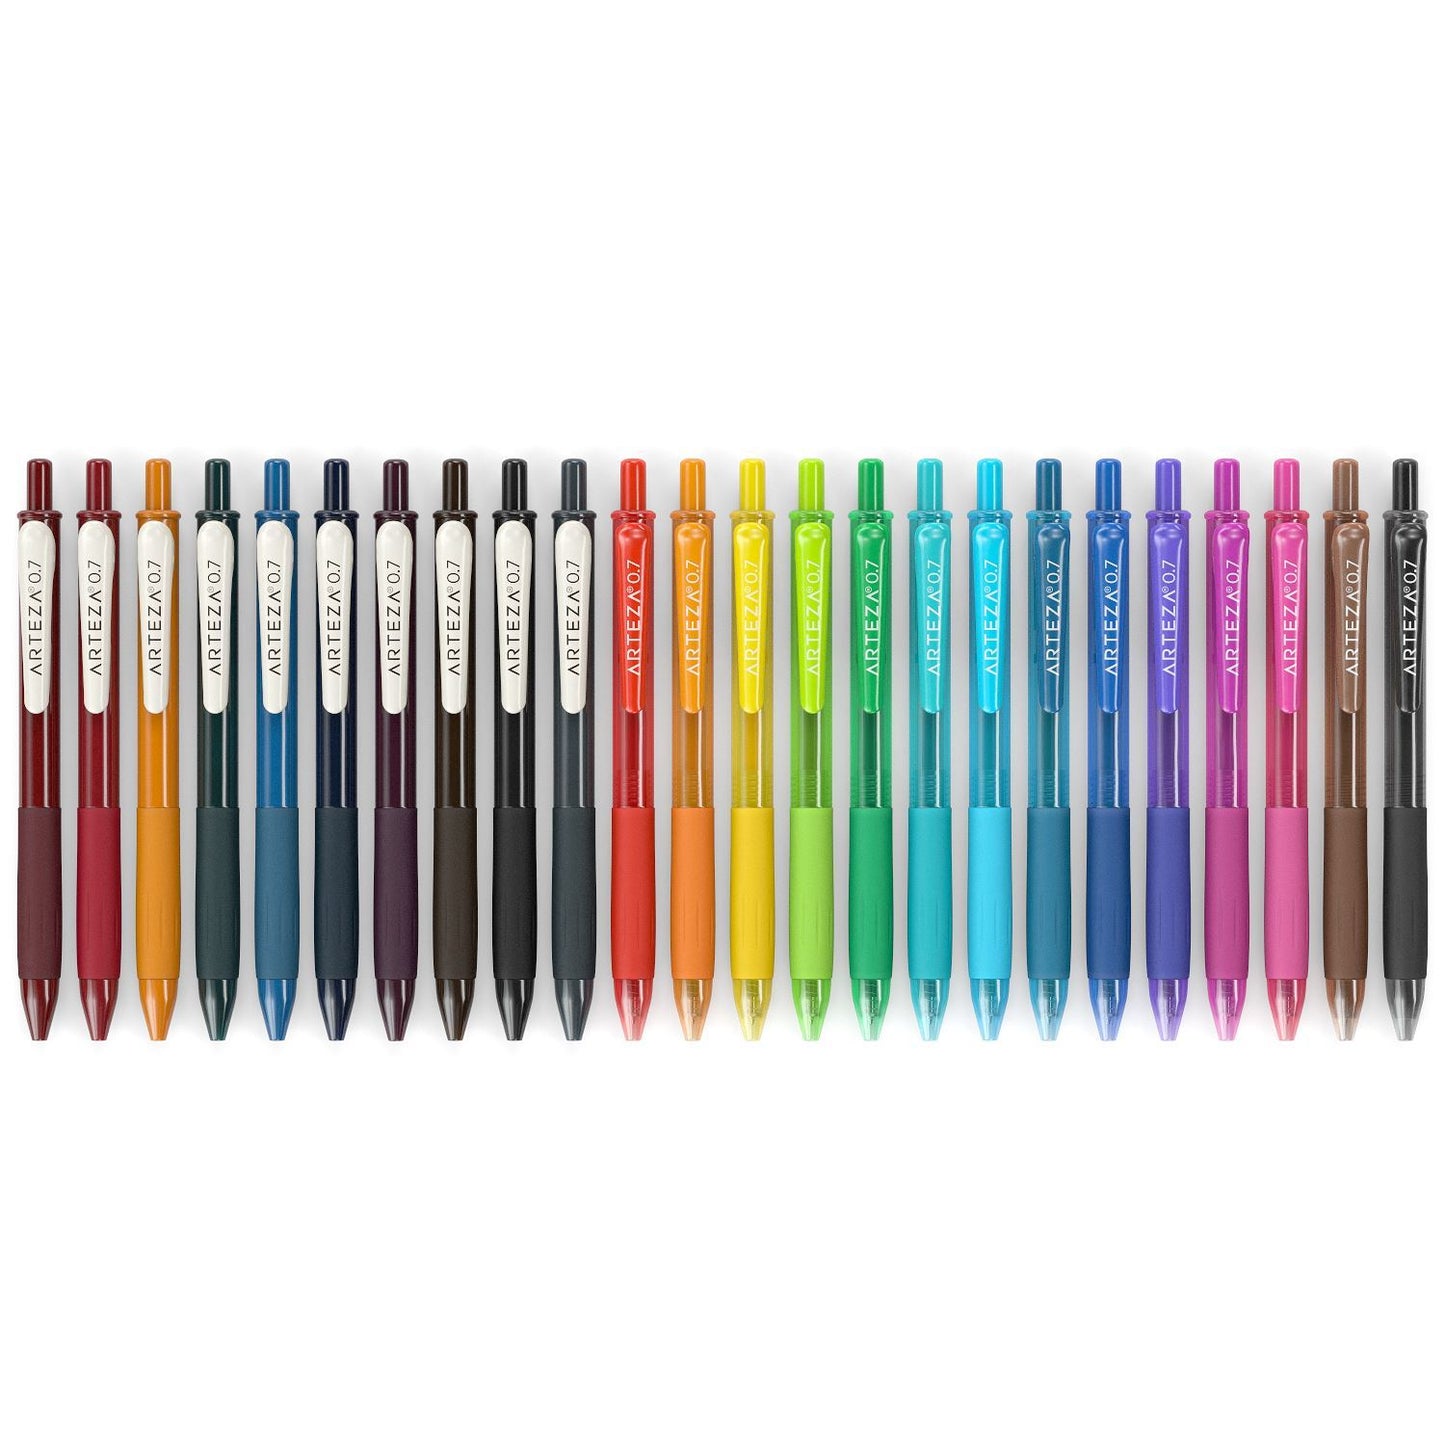 https://arteza.com/cdn/shop/products/retractable-gel-ink-pens-vintage-bright-colors-set-of-24_Nv4NlhA1.jpg?v=1666631659&width=1445